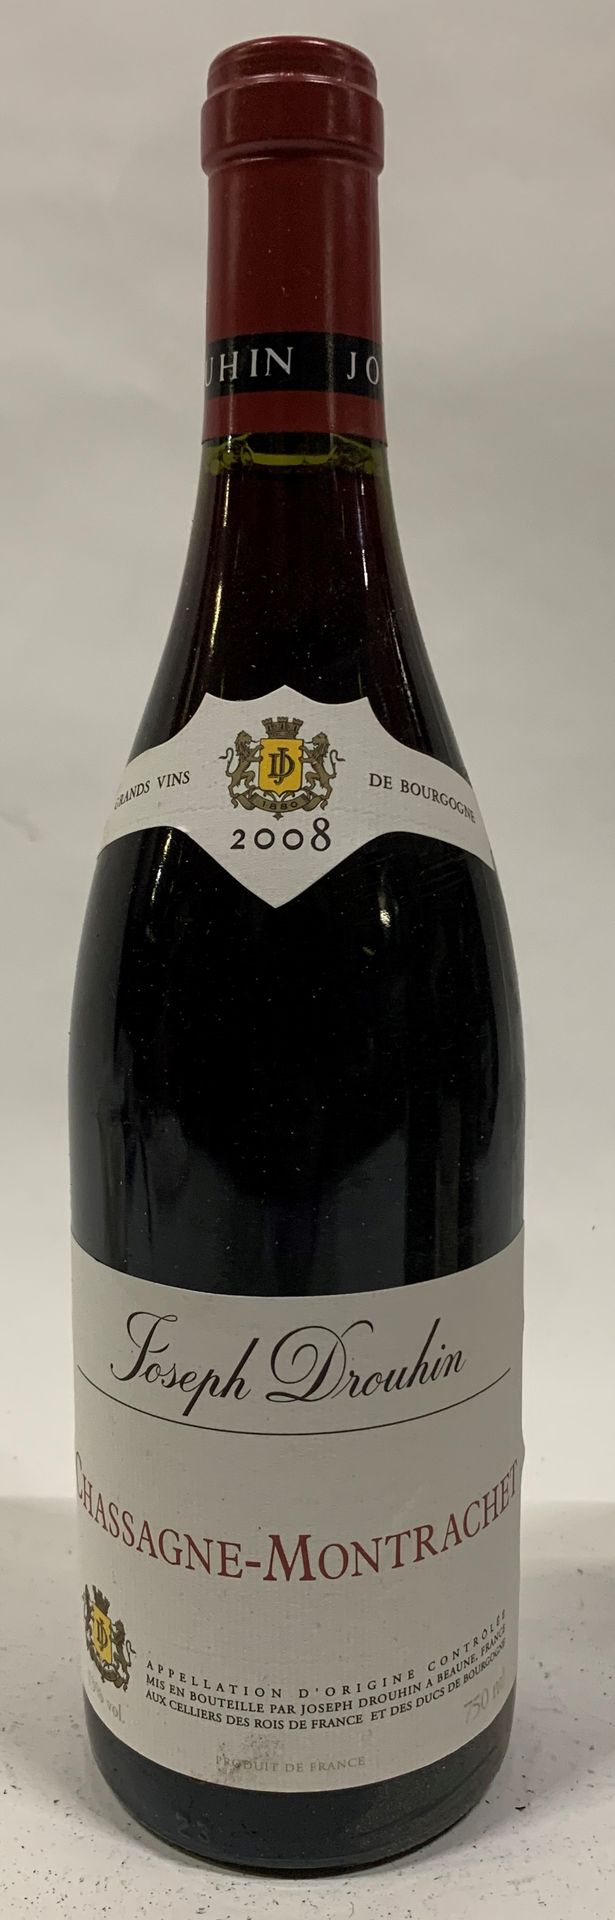 Null ● CHASSAGNE-MONTRACHET | Joseph Drouhin, 2008

11 bouteilles

Réf. 94